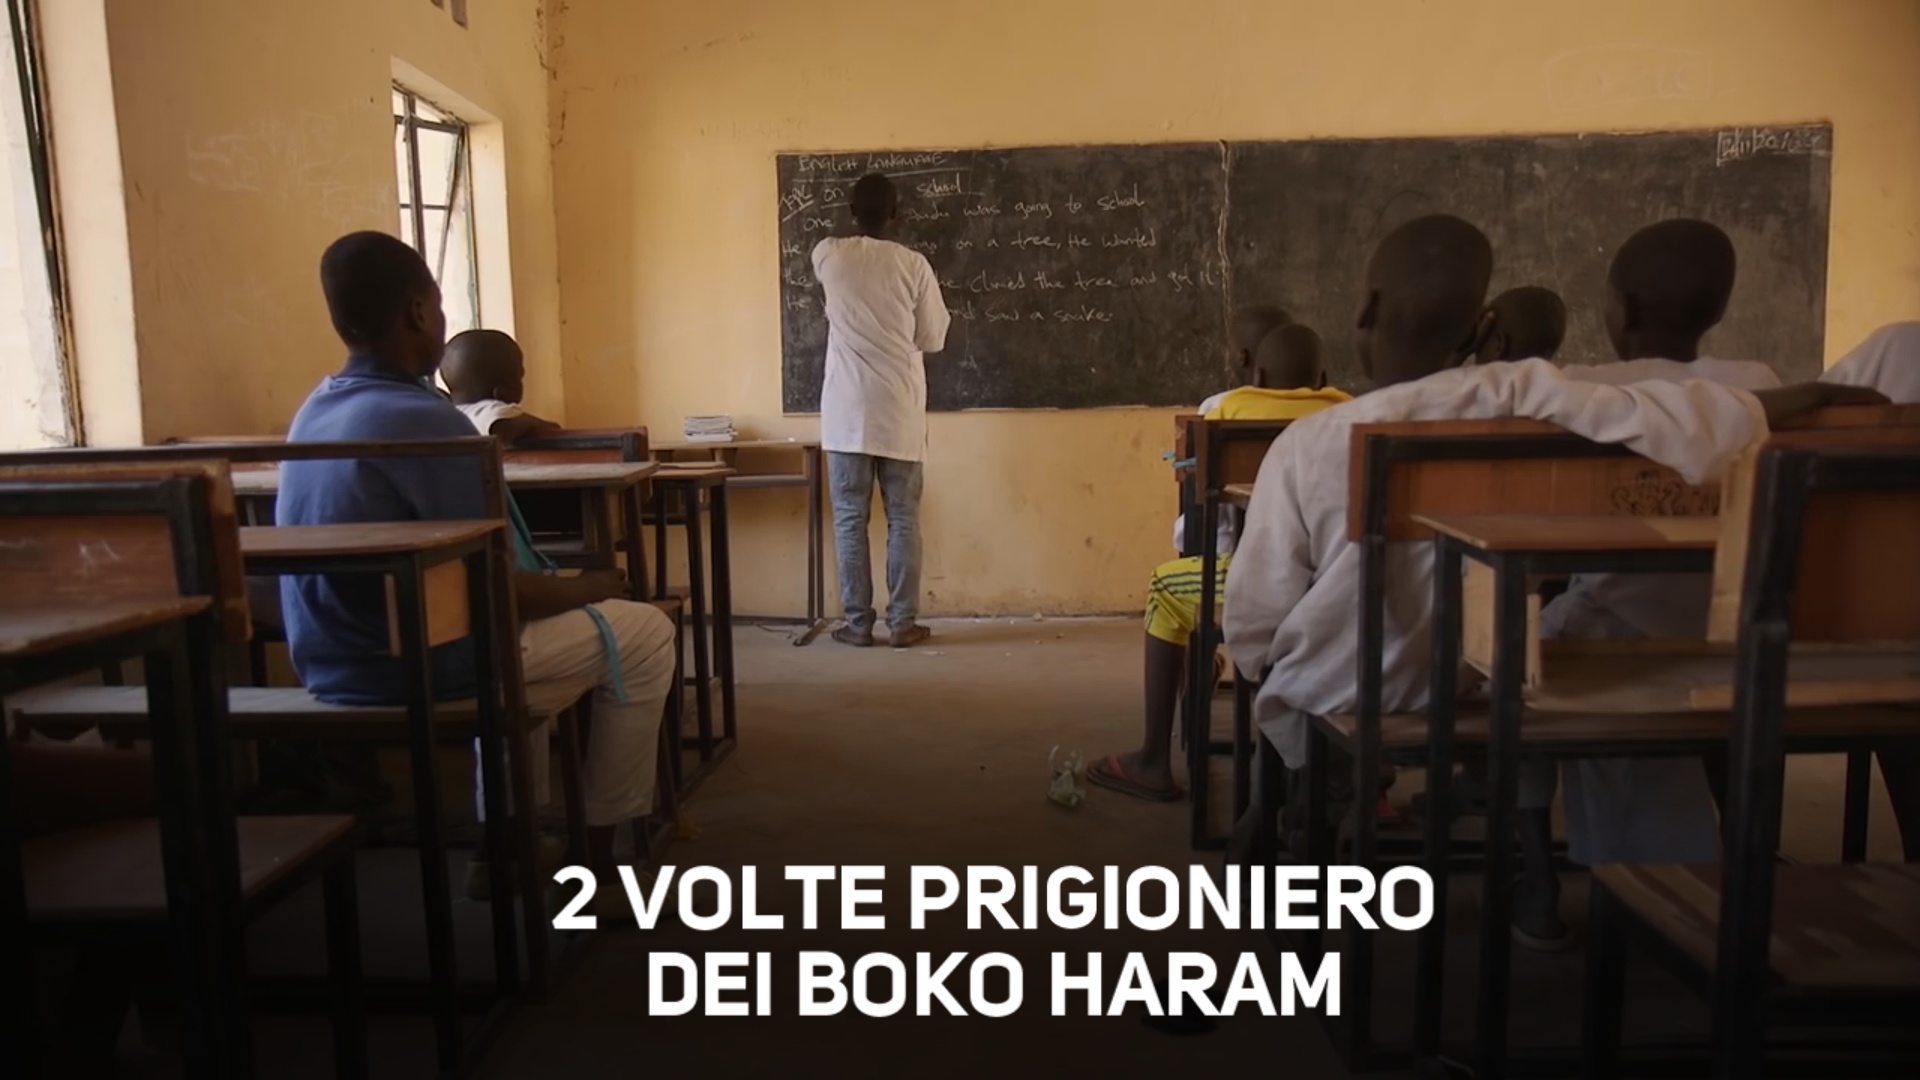 ll racconto: 'cosi' sono scappato 2 volte da Boko Haram'